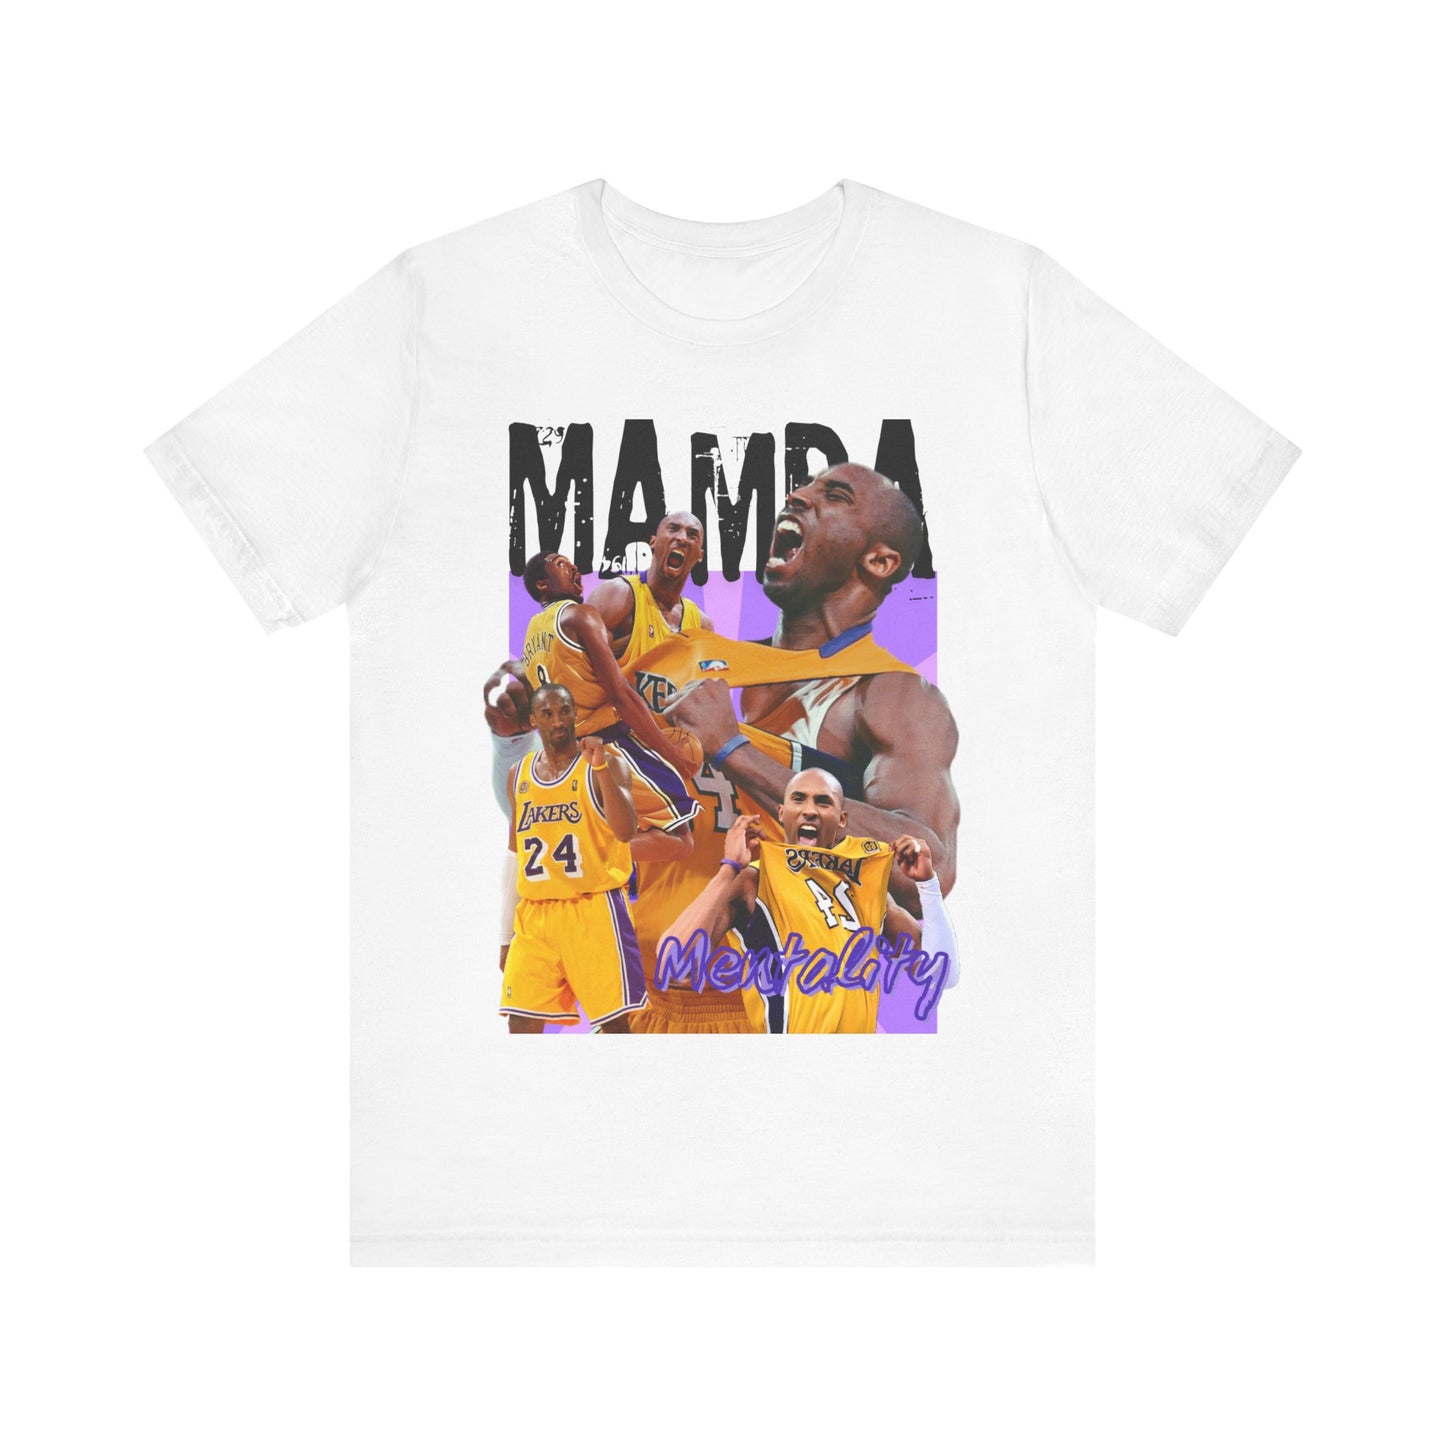 Kobe Bryant “Mamba Mentality” Tee